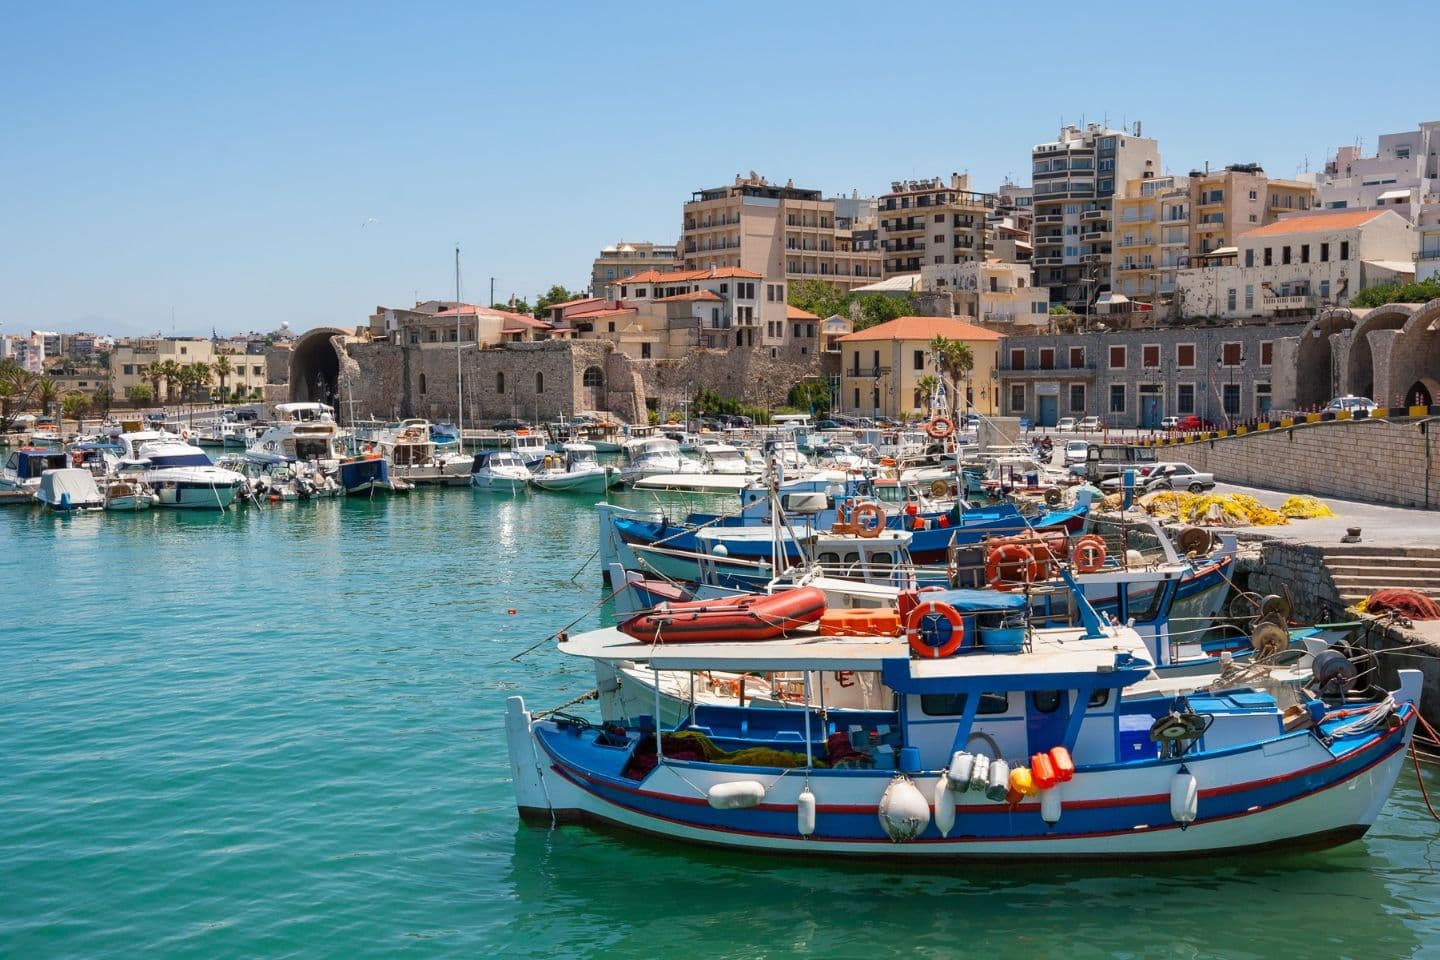 harbor in heraklion, crete